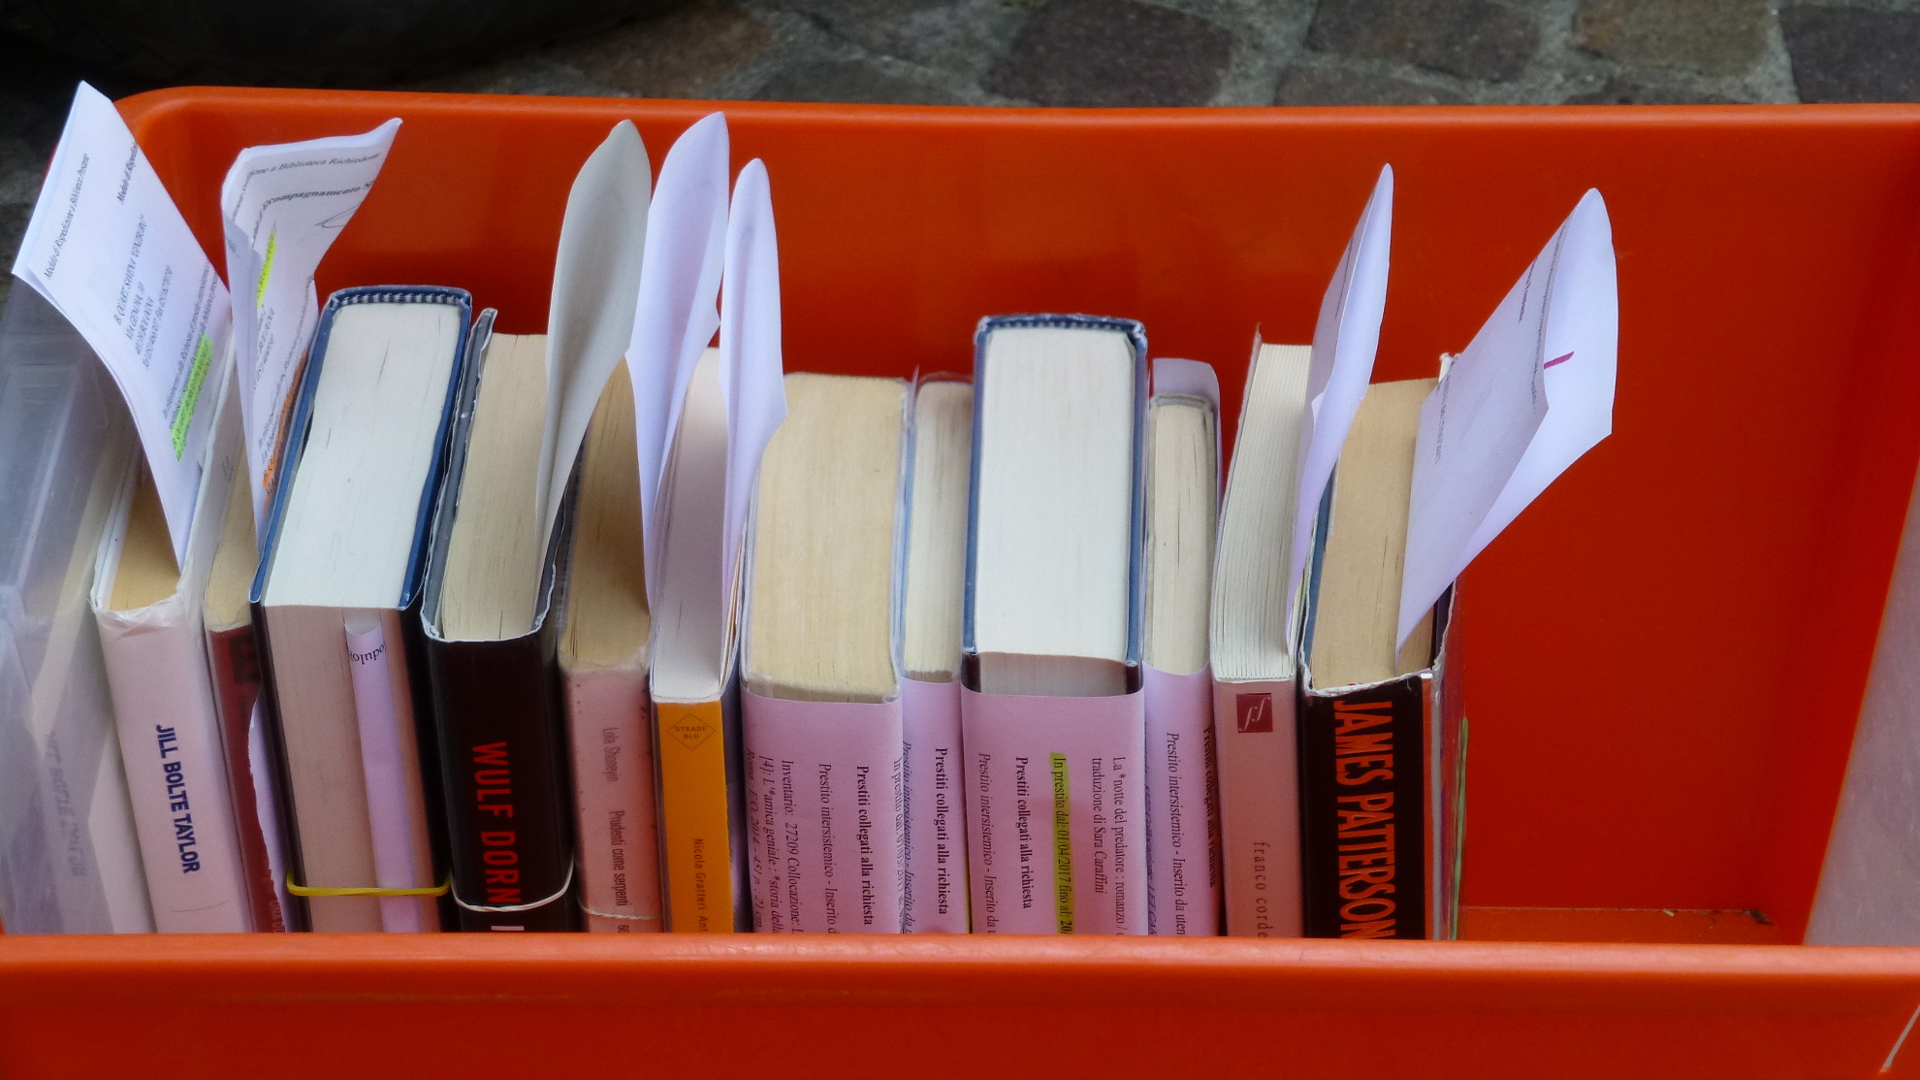 Far viaggiare i libri e non i lettori: il sistema bibliotecario PIC diventa metropolitano